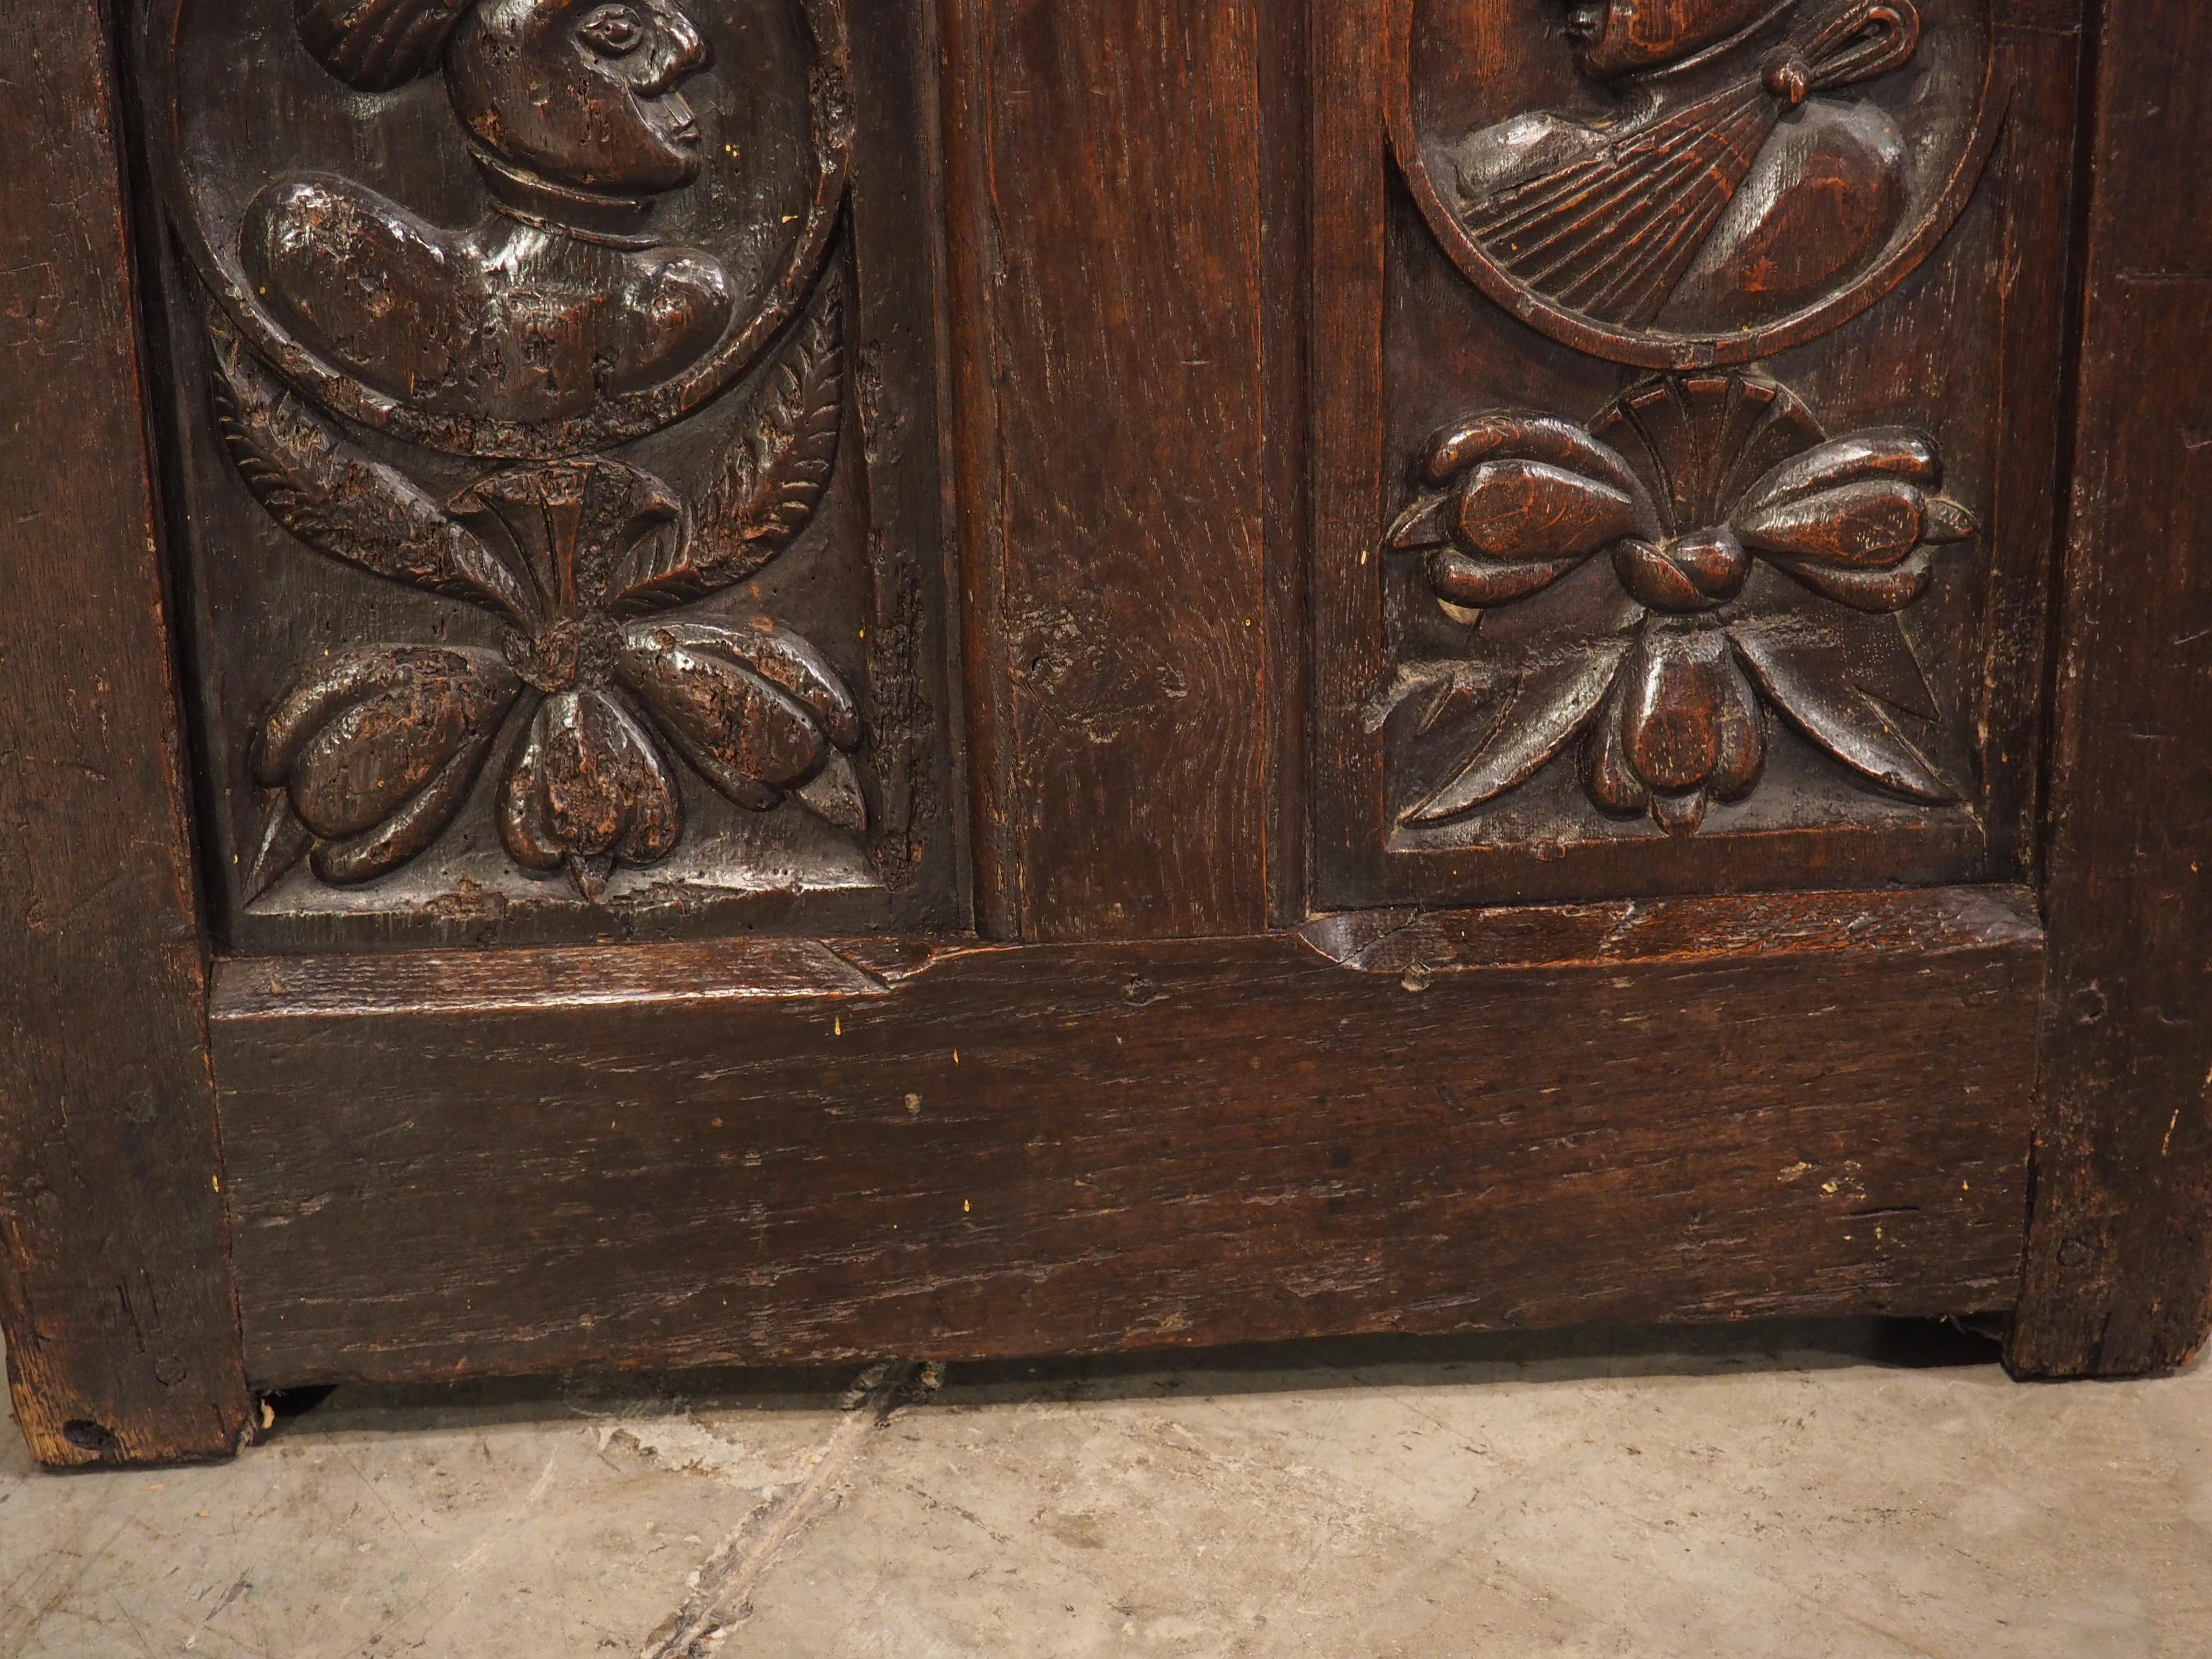 Während viele Möbel der italienischen Renaissance stark bemalt oder mit Intarsien verziert waren, wurden in Frankreich überwiegend handgeschnitzte Elemente verwendet, die als Ornamente dienten. Ein schönes Beispiel für ein Angebot aus der